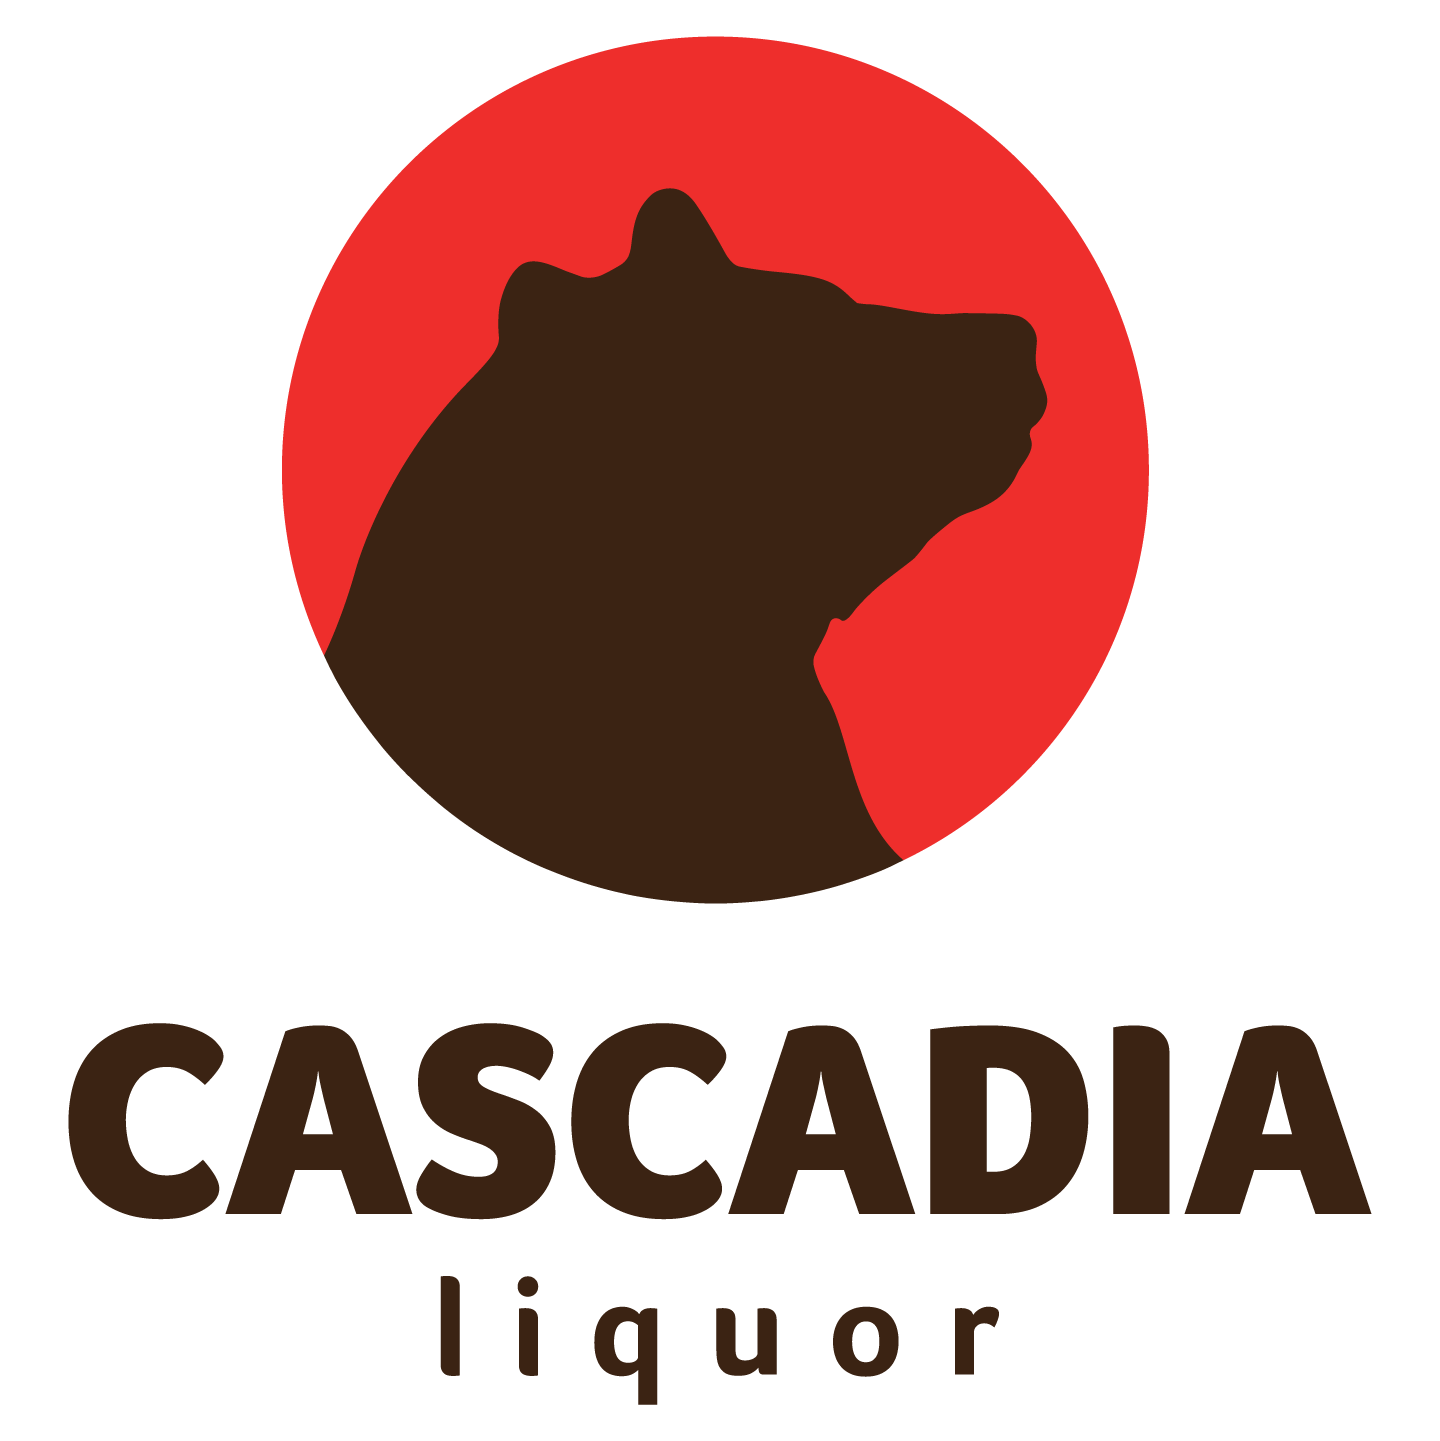 Liquor Logo - Cascadia Liquor